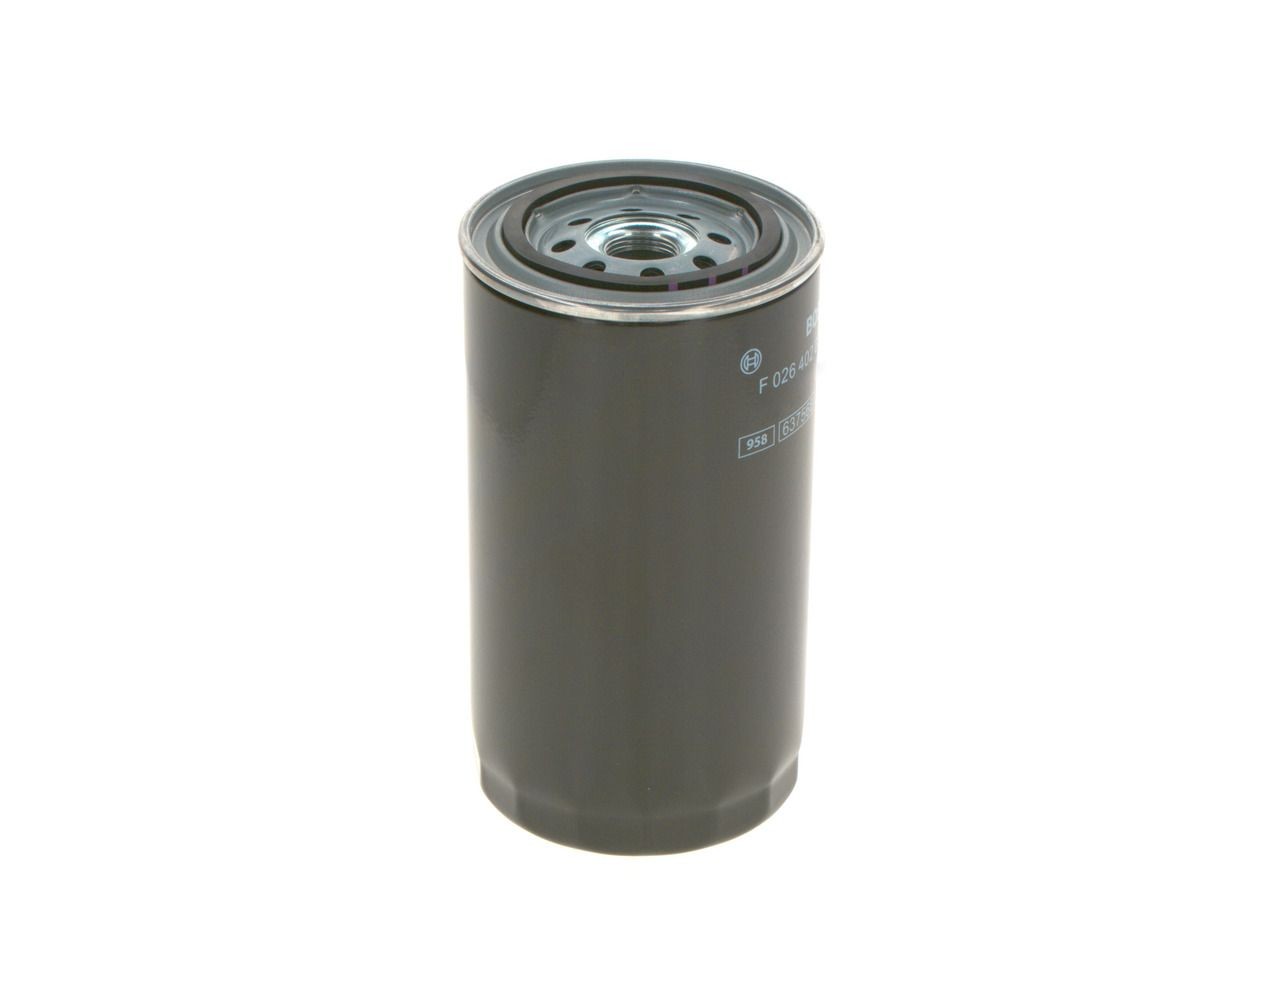 F026402030 Fuel filter N 2030 BOSCH Spin-on Filter